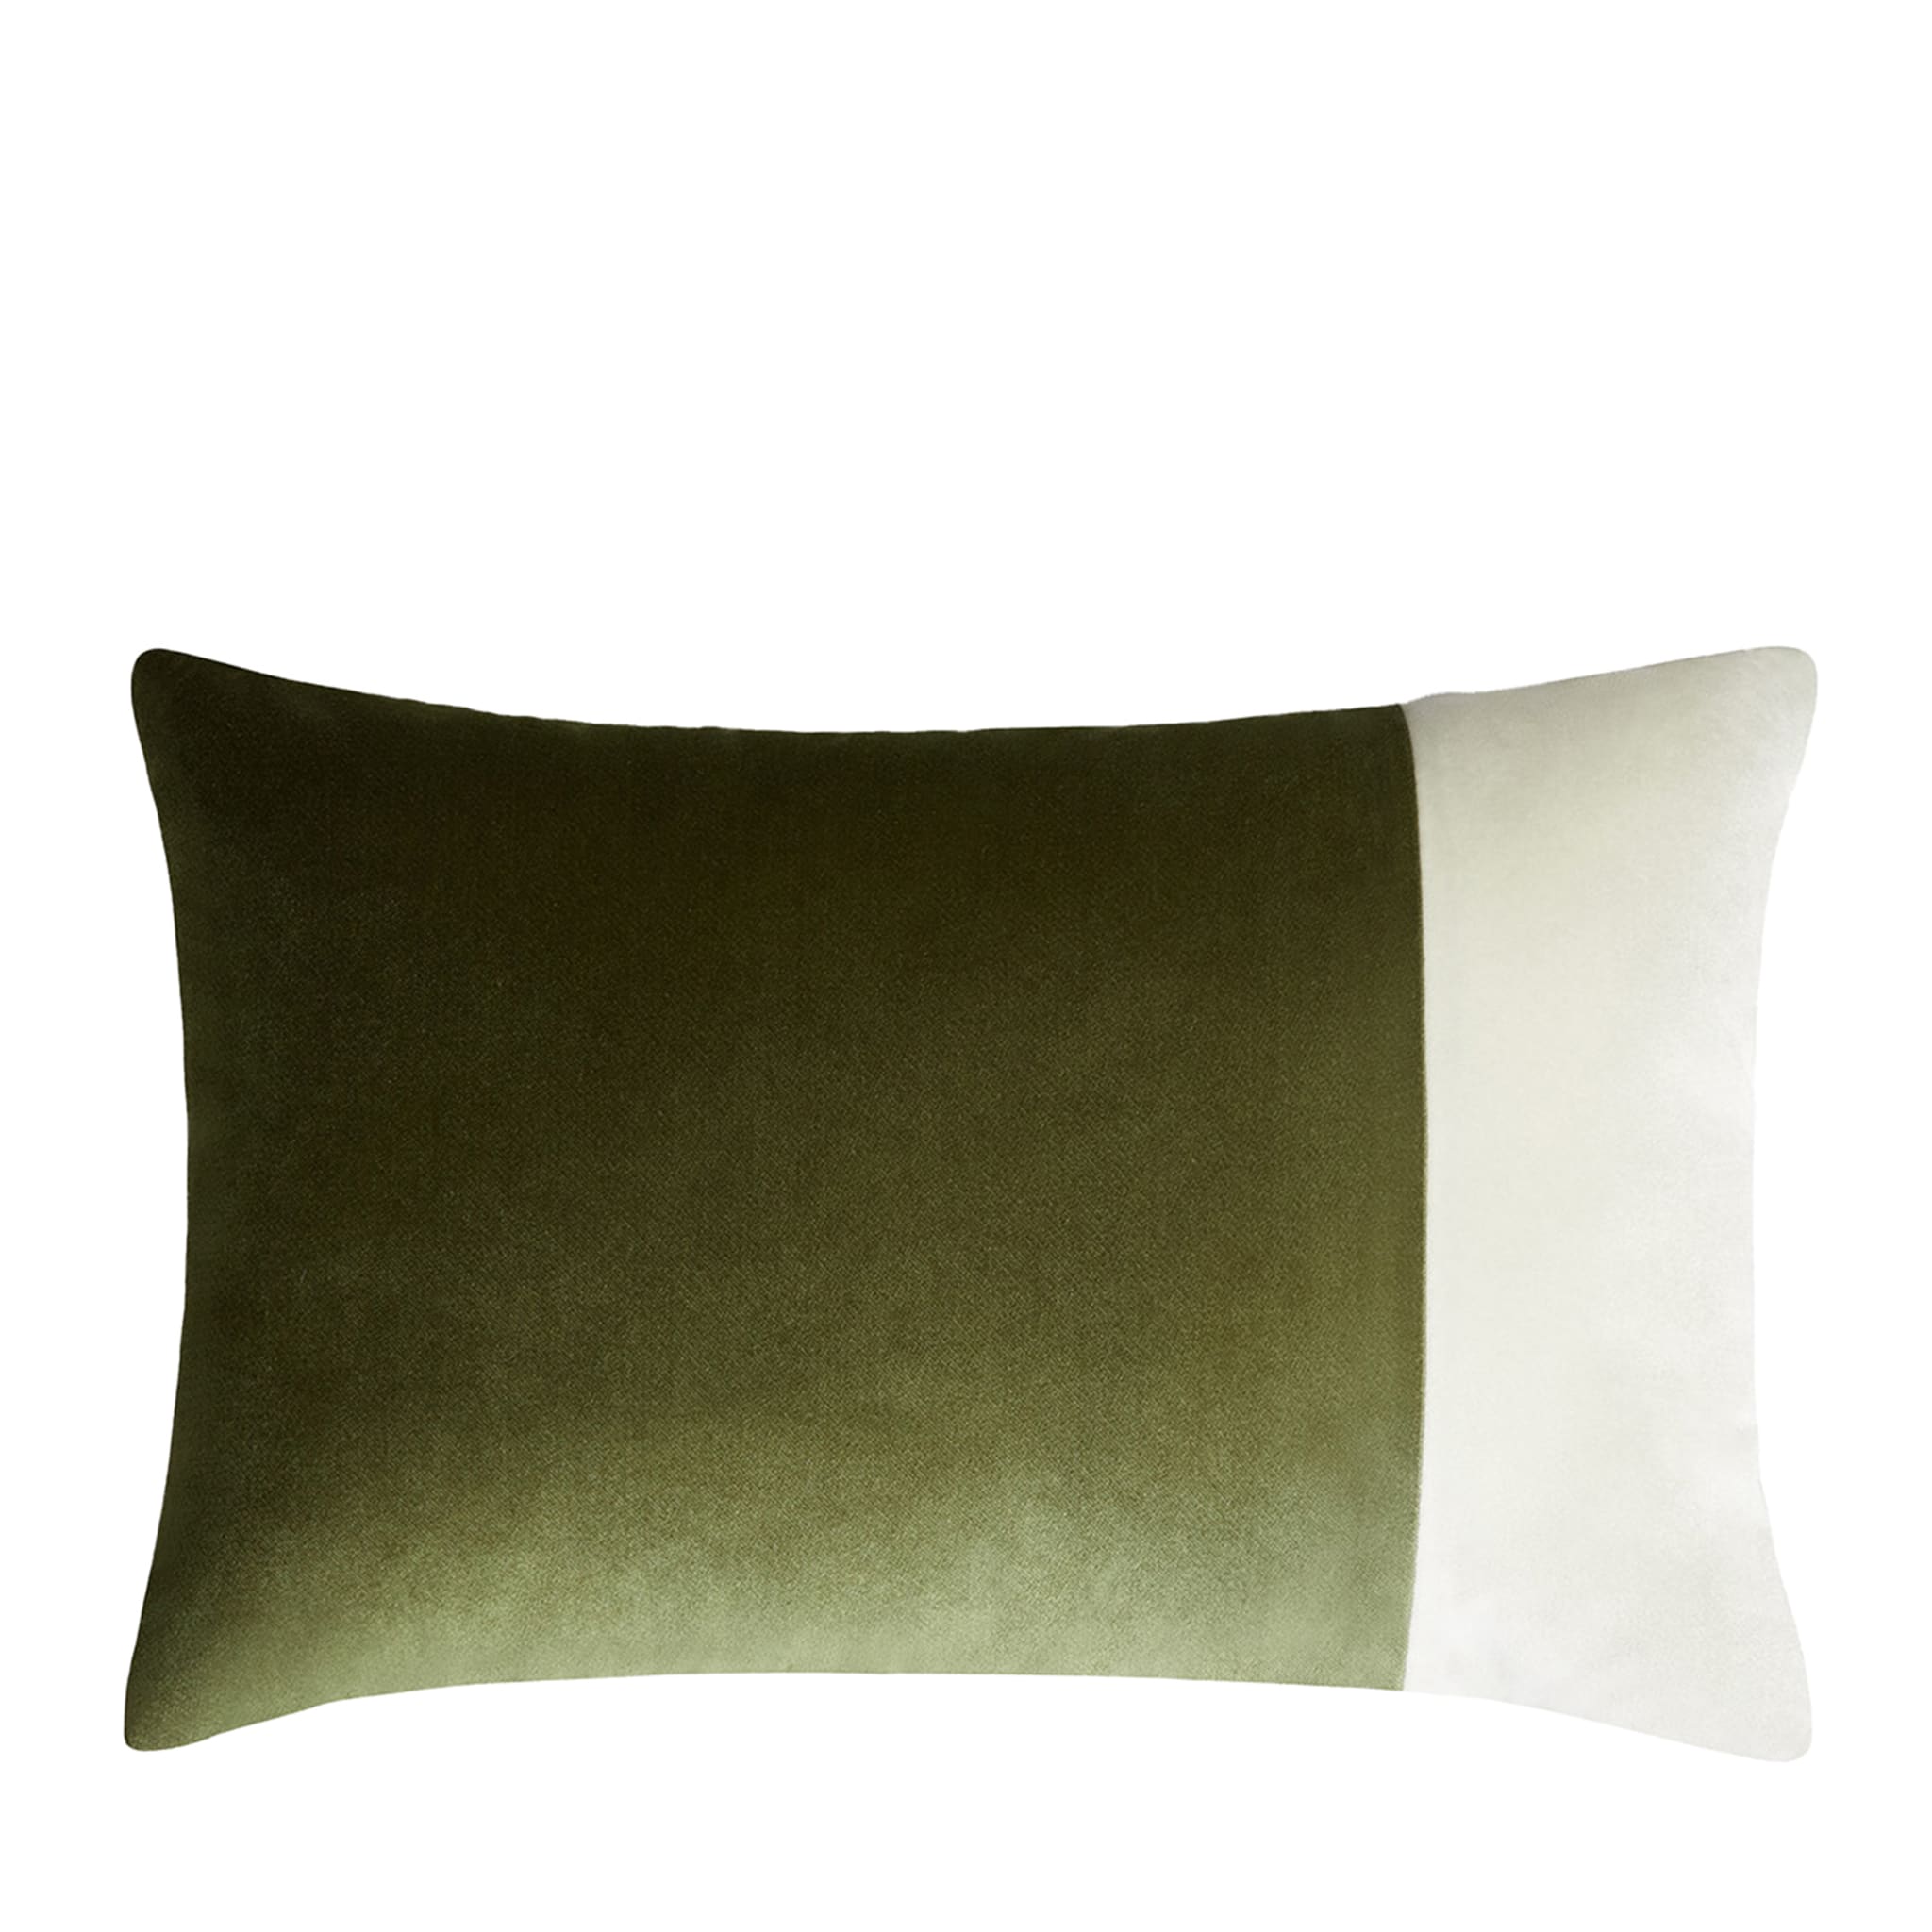 Cuscino rettangolare doppio verde e bianco - Vista principale